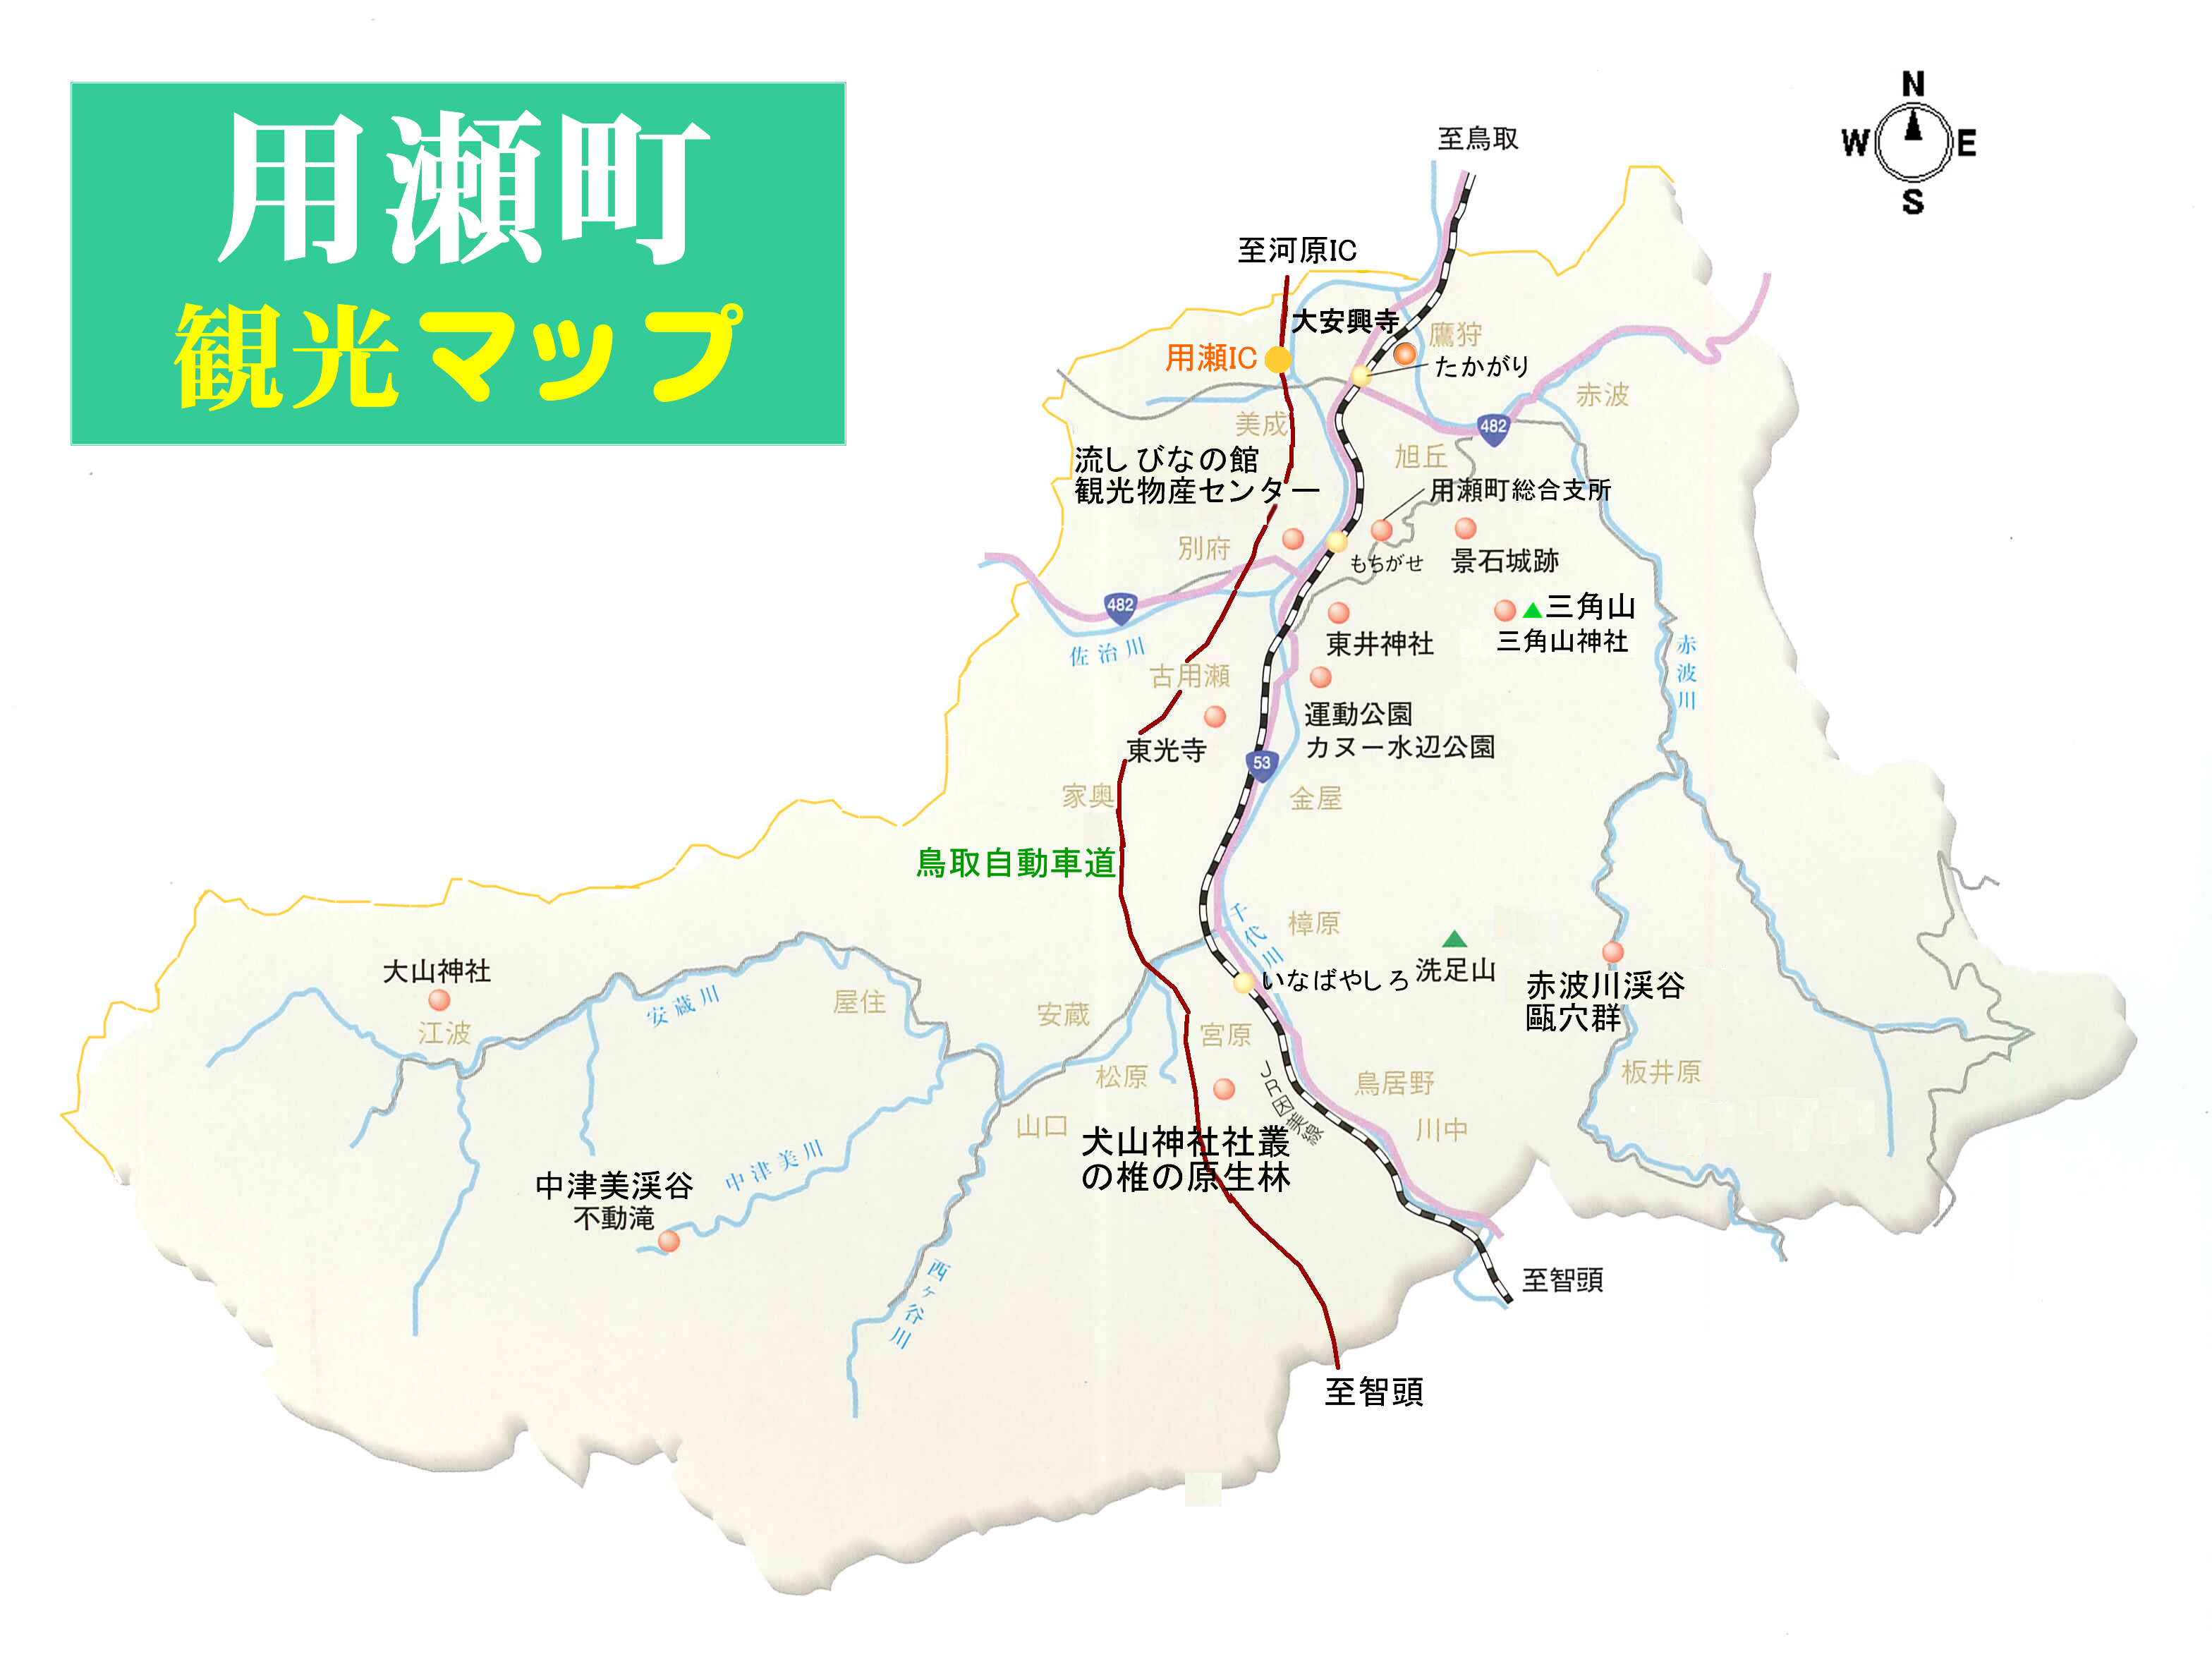 用瀬町観光マップ